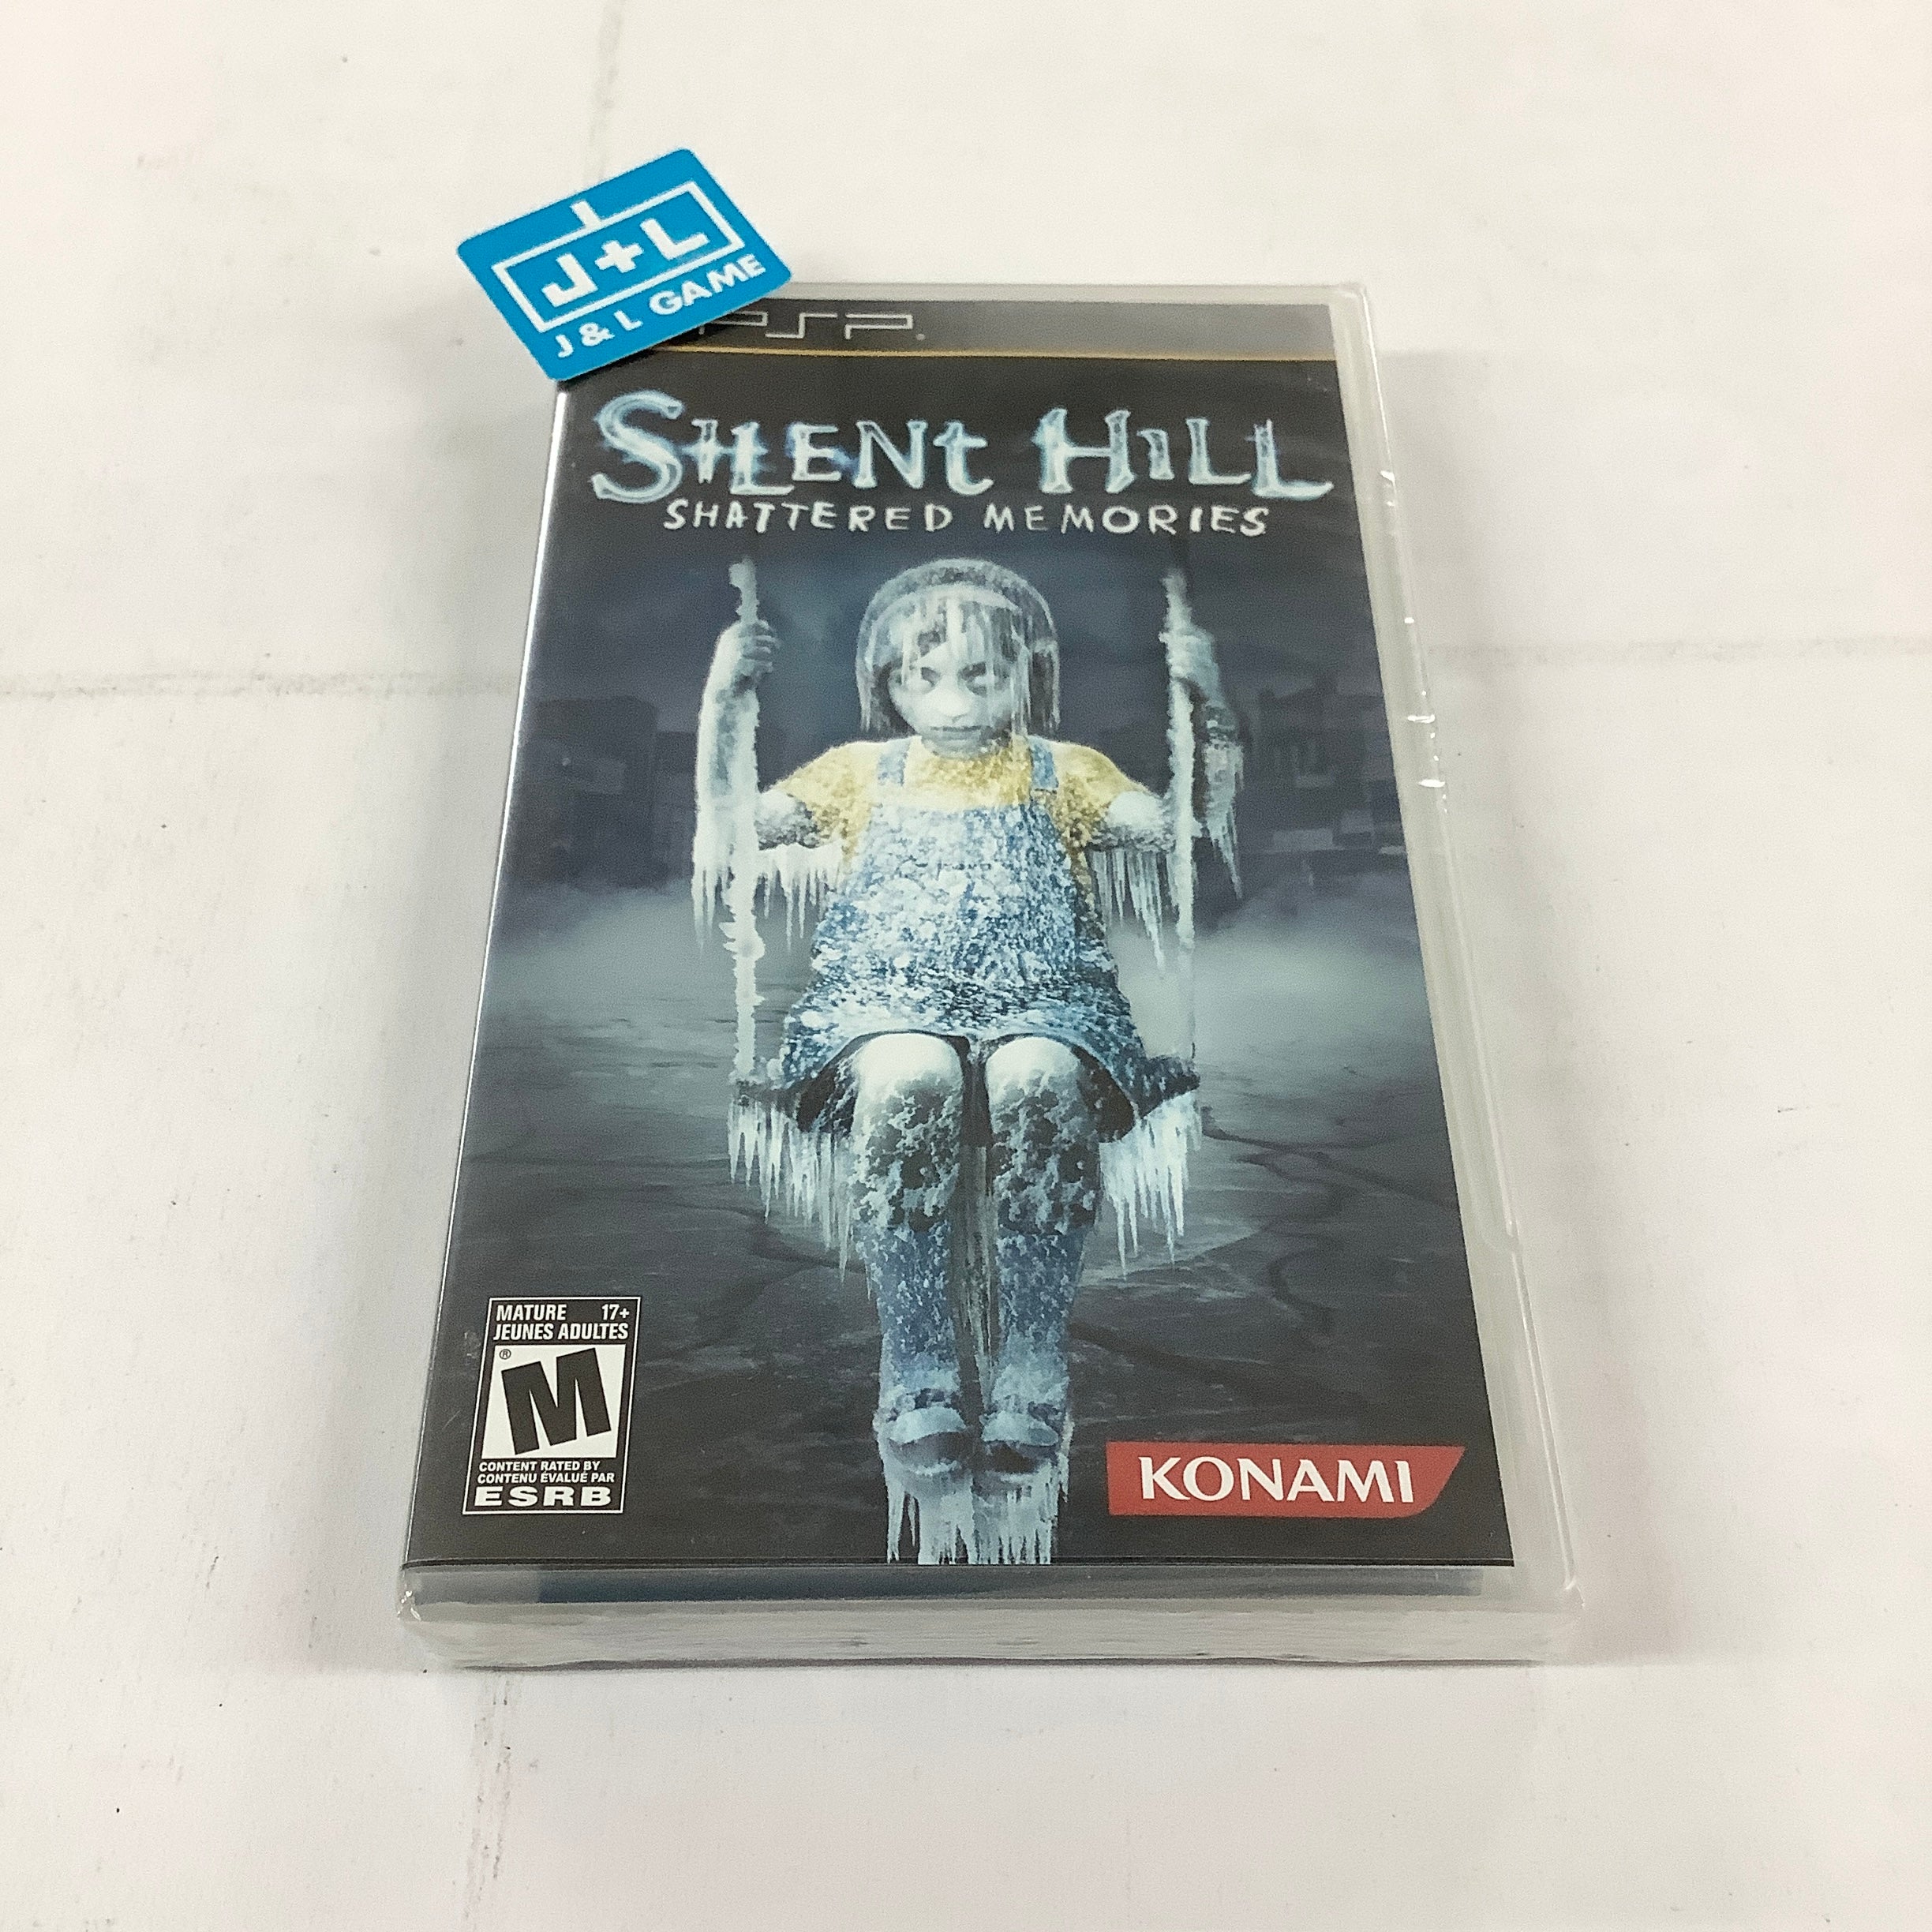 Silent Hill: Shattered Memories - Sony PSP Video Games Konami   